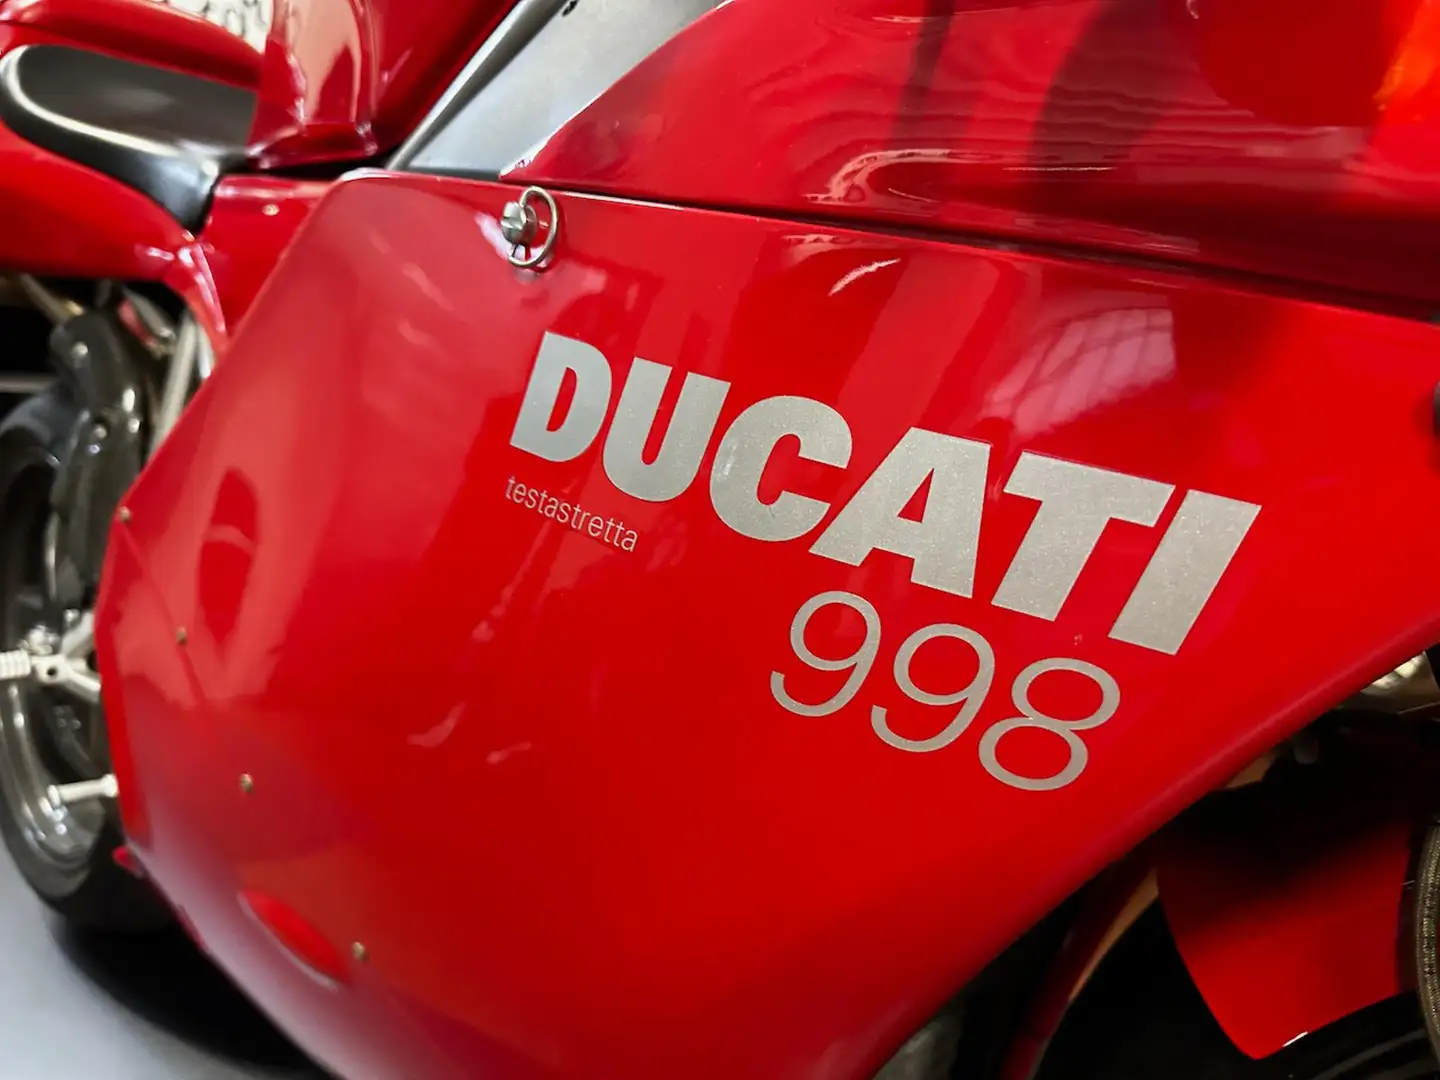 Ducati 998 ORIGINALE Червоний - 2